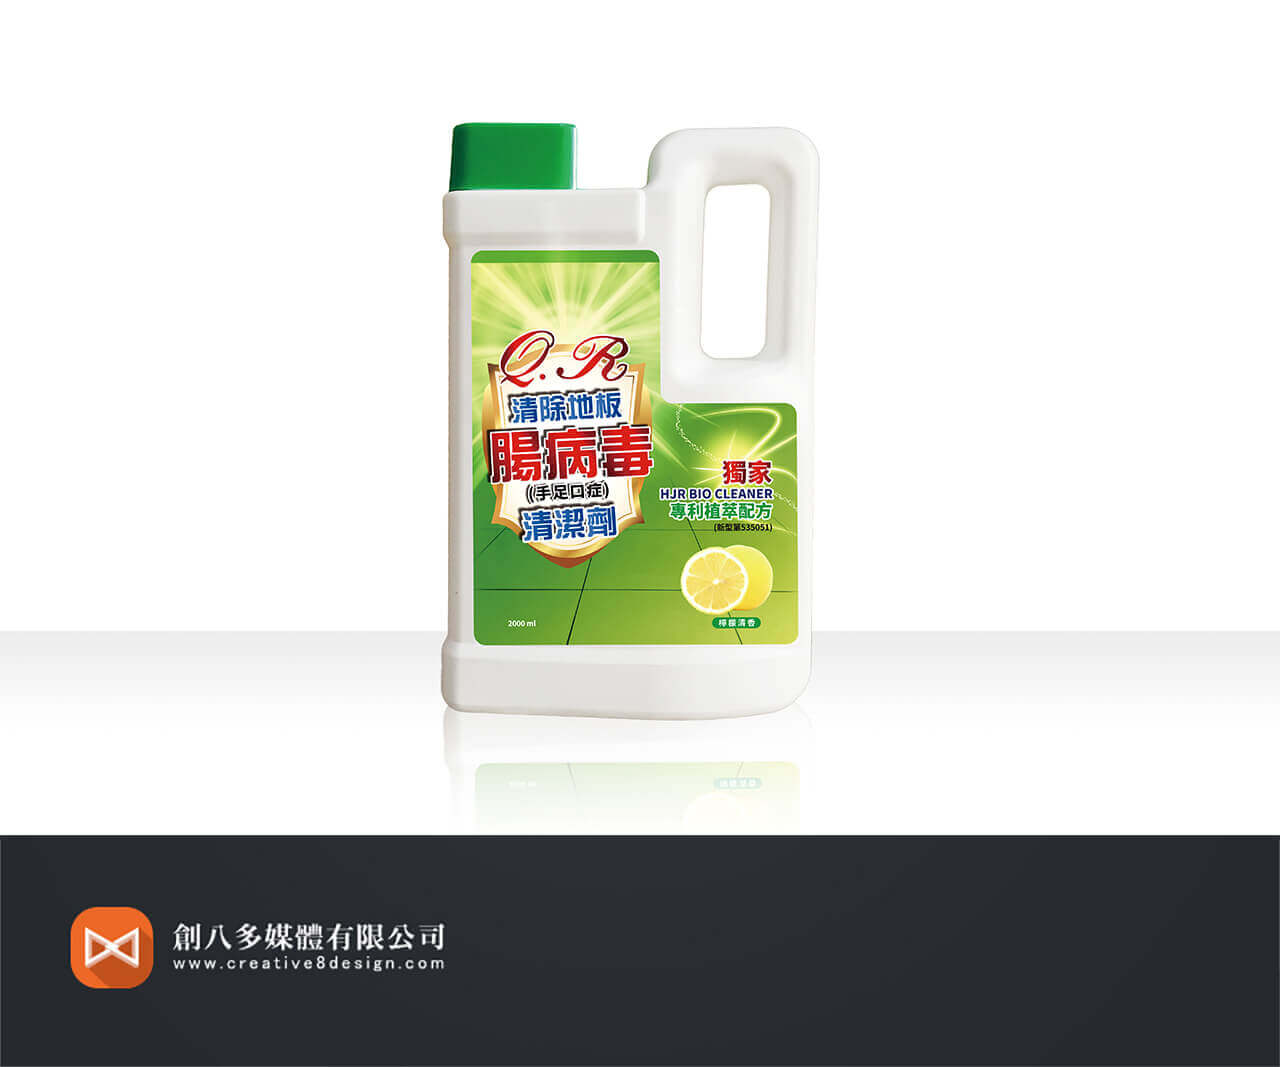 建榮生技-QR清除地板腸病毒清潔劑的圖片